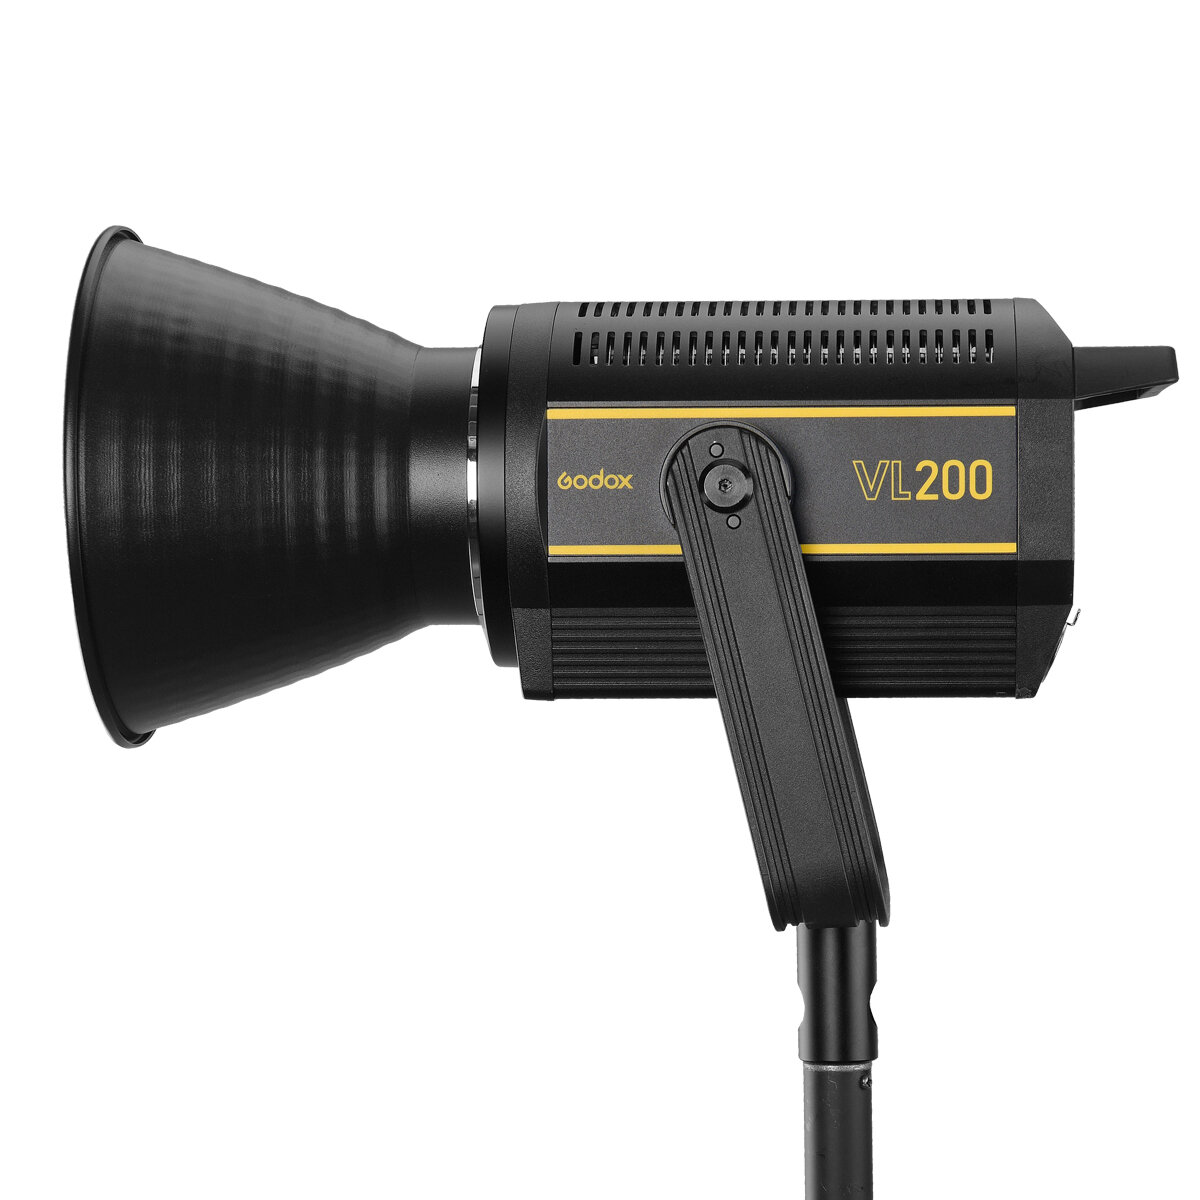 Осветитель светодиодный Godox VL200 (без пульта) осветитель светодиодный godox fv150 с функцией вспышки без пульта